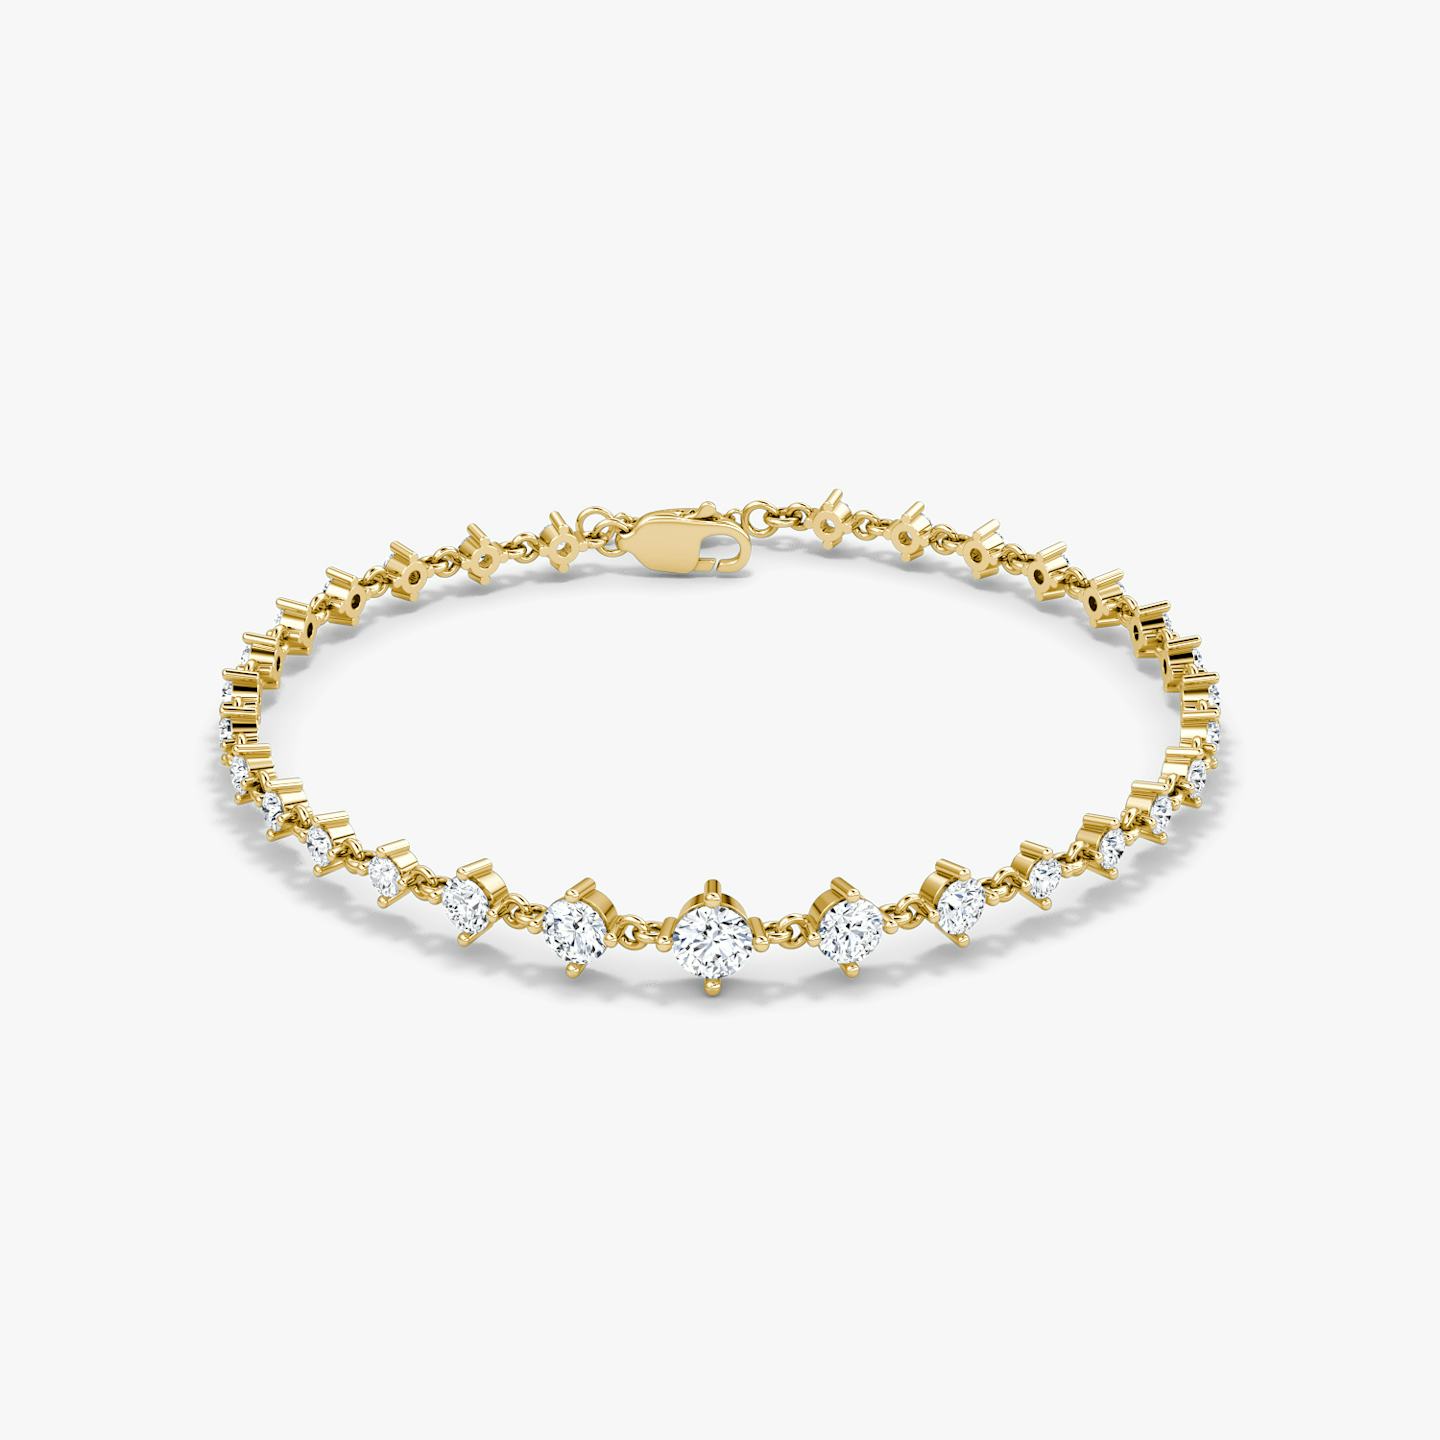 Bracelet Infinity Linked Tennis | Rond Brillant | 14k | Or jaune 18 carats | Poids en carats: 1.70 | Longueur de la chaîne: 6.5